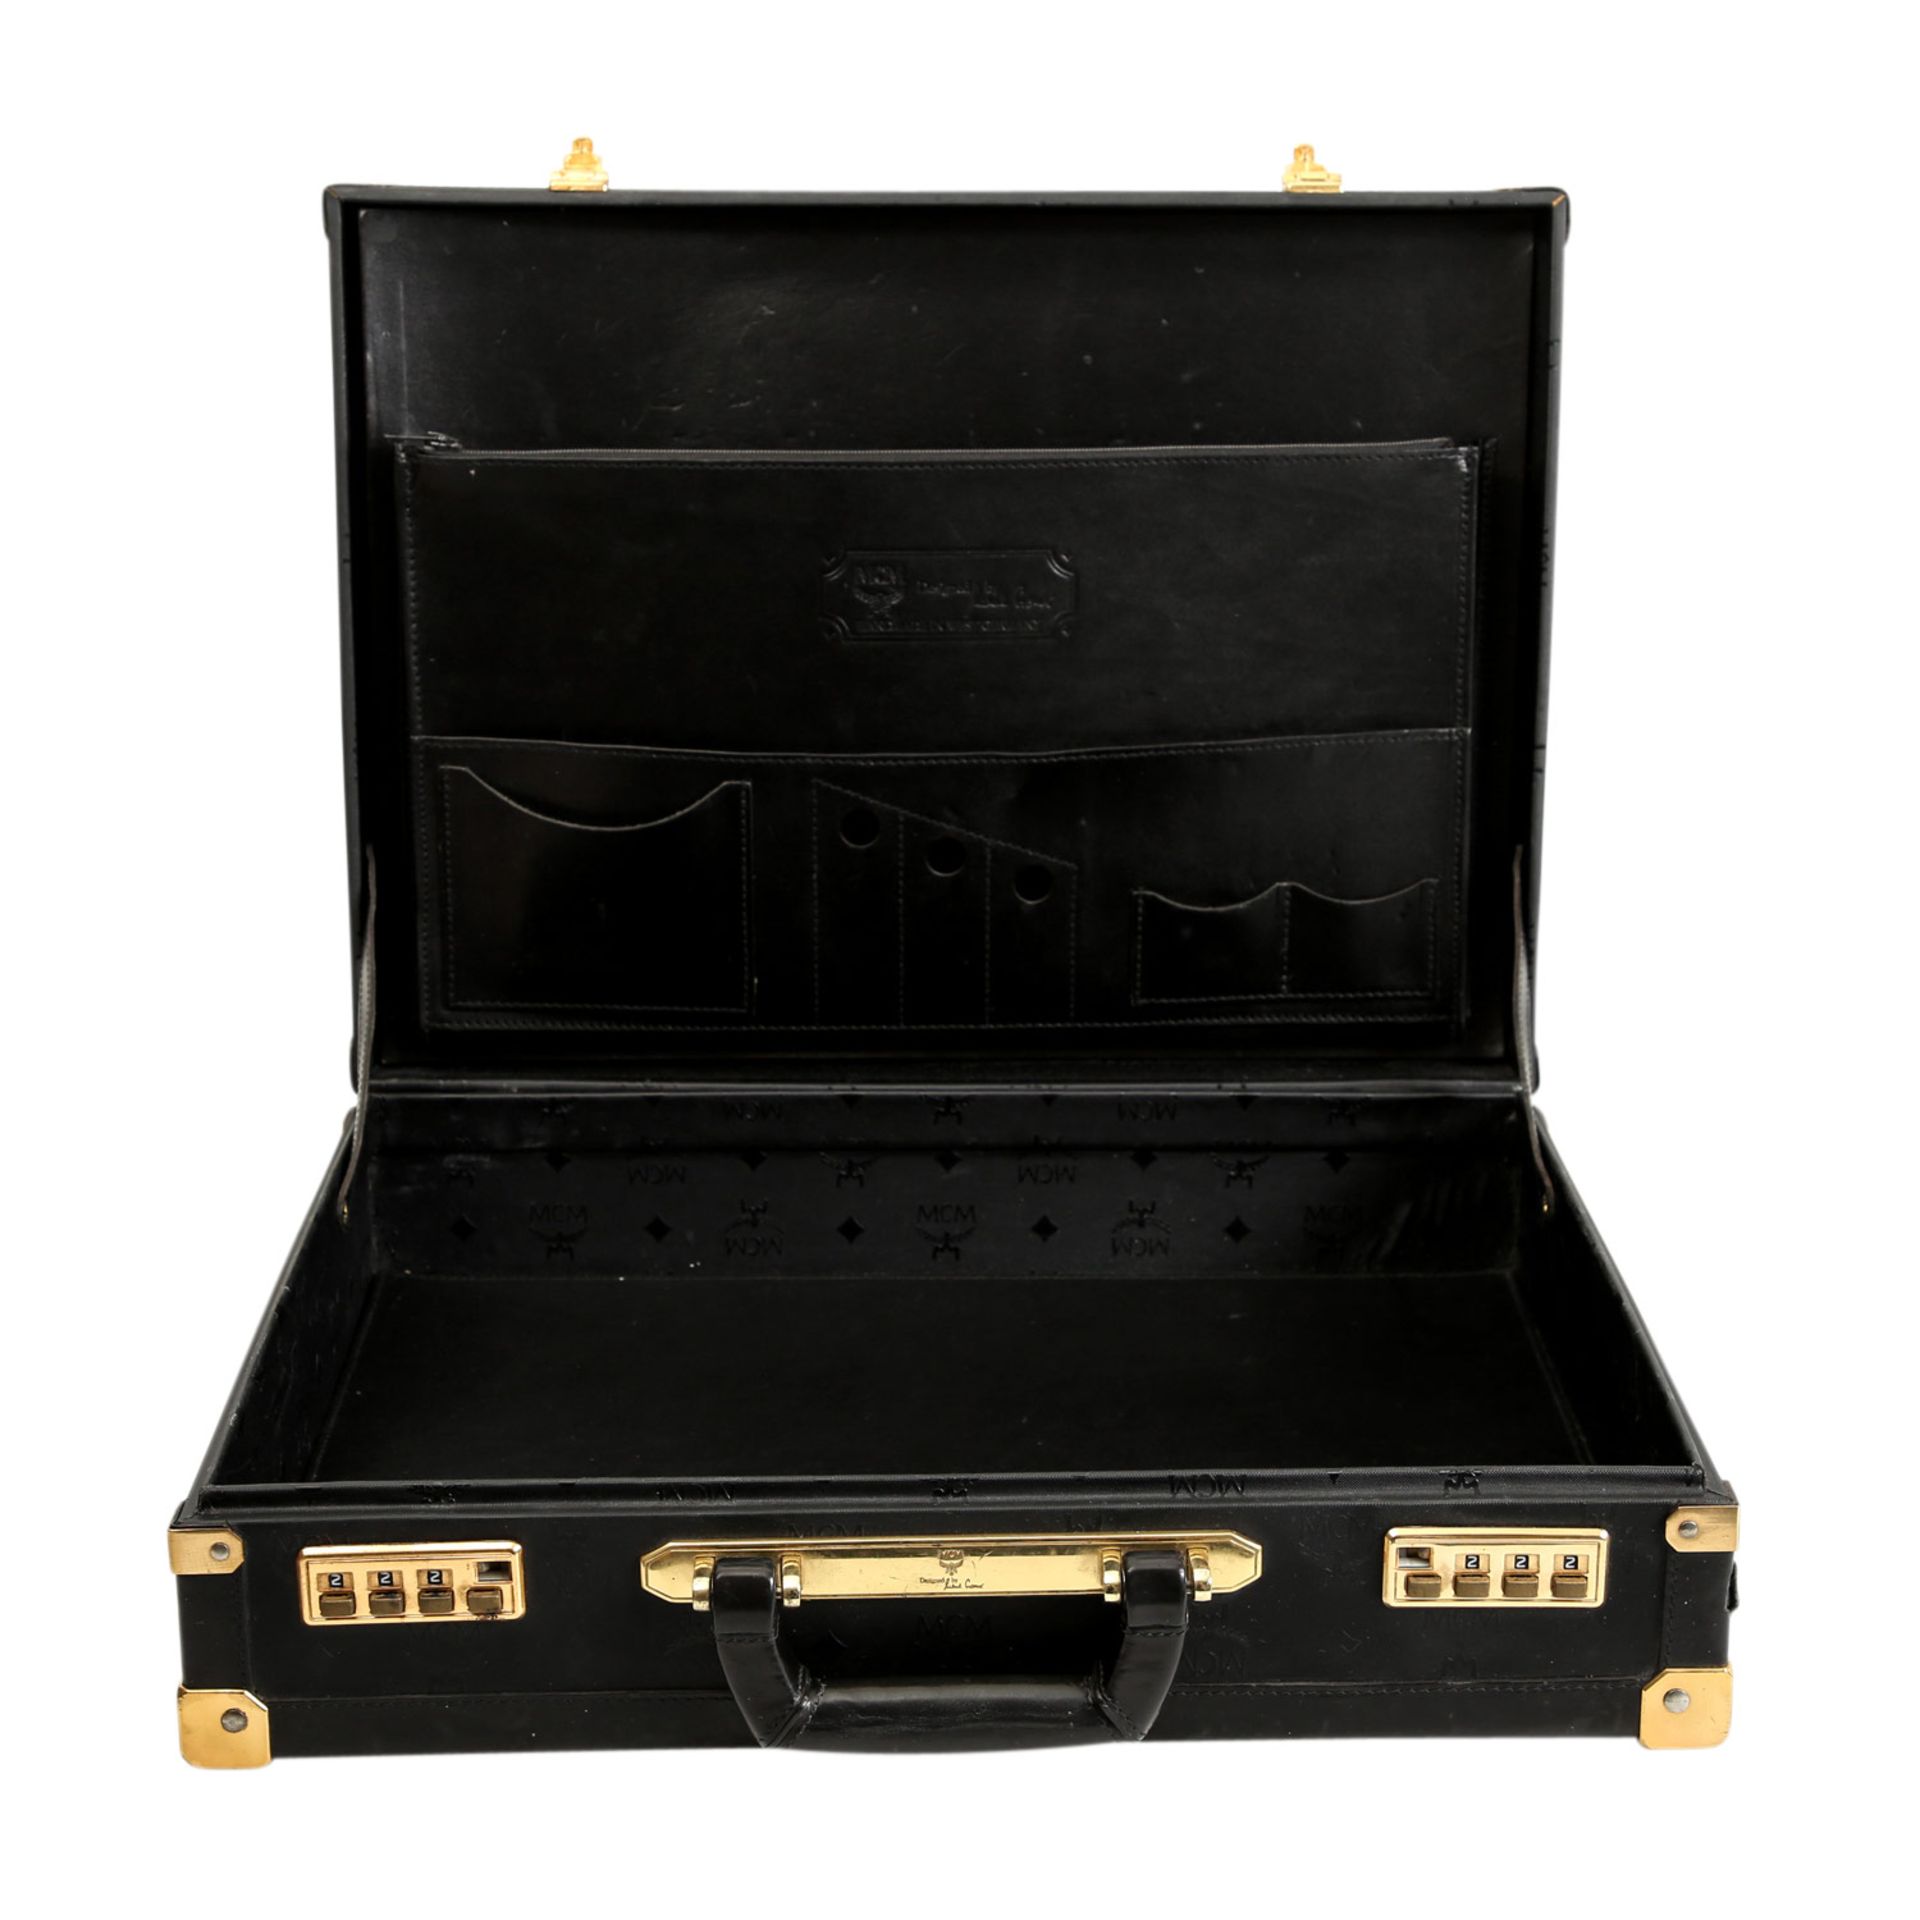 MCM VINTAGE Aktenkoffer.Heritage Muster in Schwarz, Besätze aus Glattleder, goldfarbene Hardware, - Bild 7 aus 7